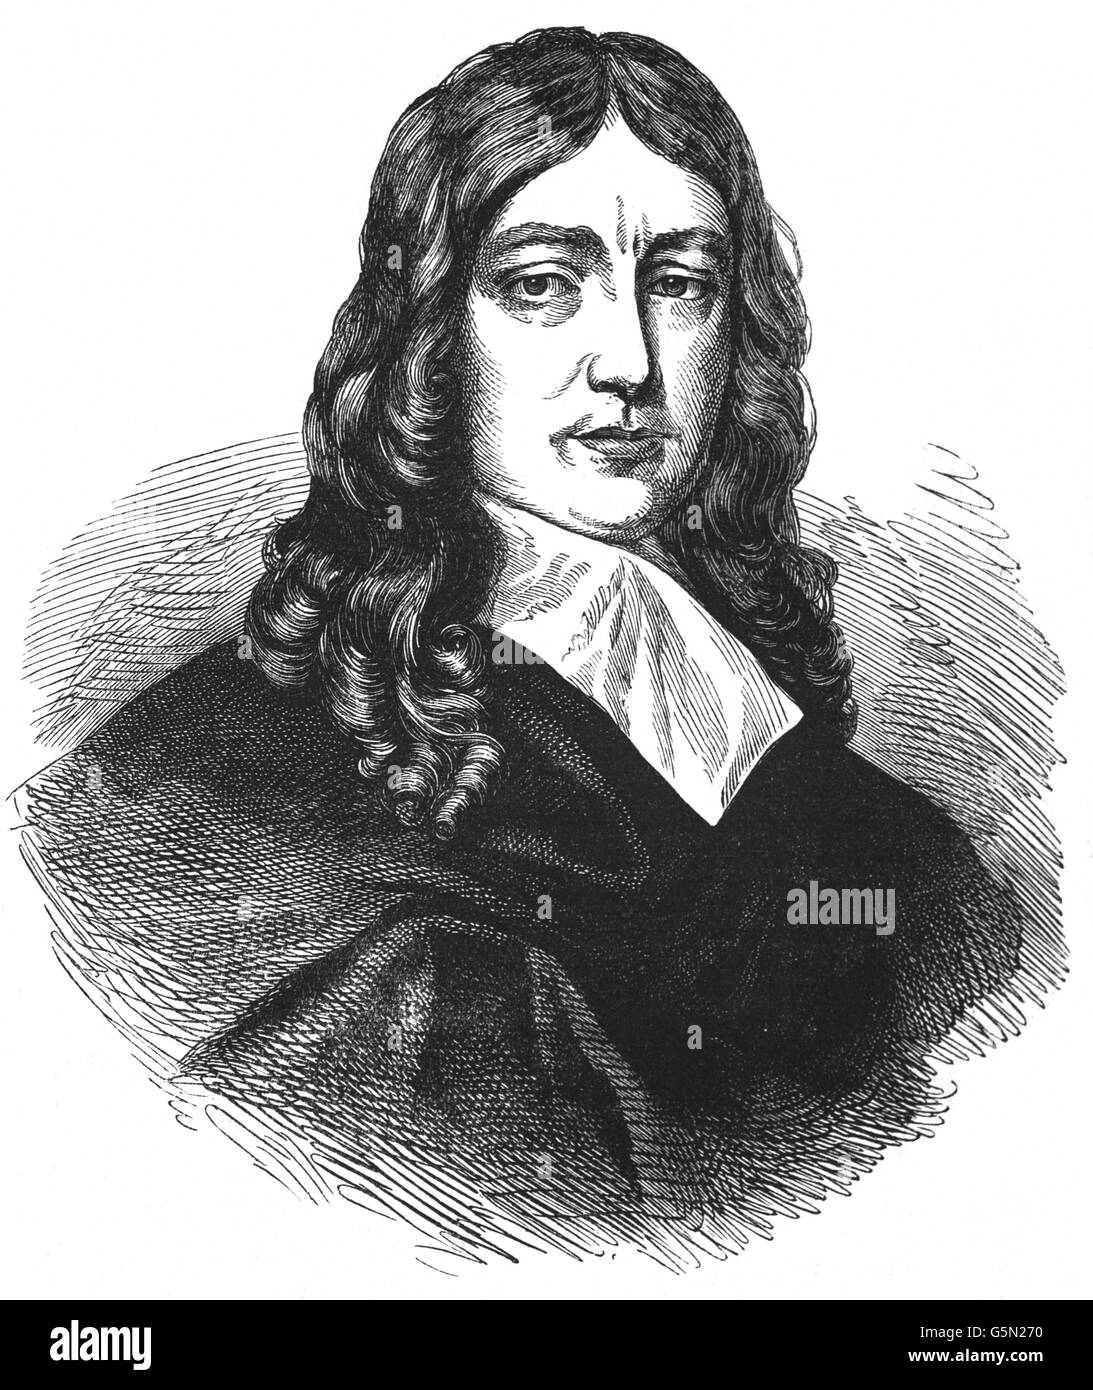 John Milton (1608 – 1674) war ein englischer Dichter, Polemiker und Mann der Buchstaben, und ein Beamter des Commonwealth of England unter Oliver Cromwell. Er schrieb in einer Zeit der religiösen Wandel und politischer Umbruch und ist bekannt für seine epische Gedicht "Paradise Lost", geschrieben im Jahre 1667. Stockfoto